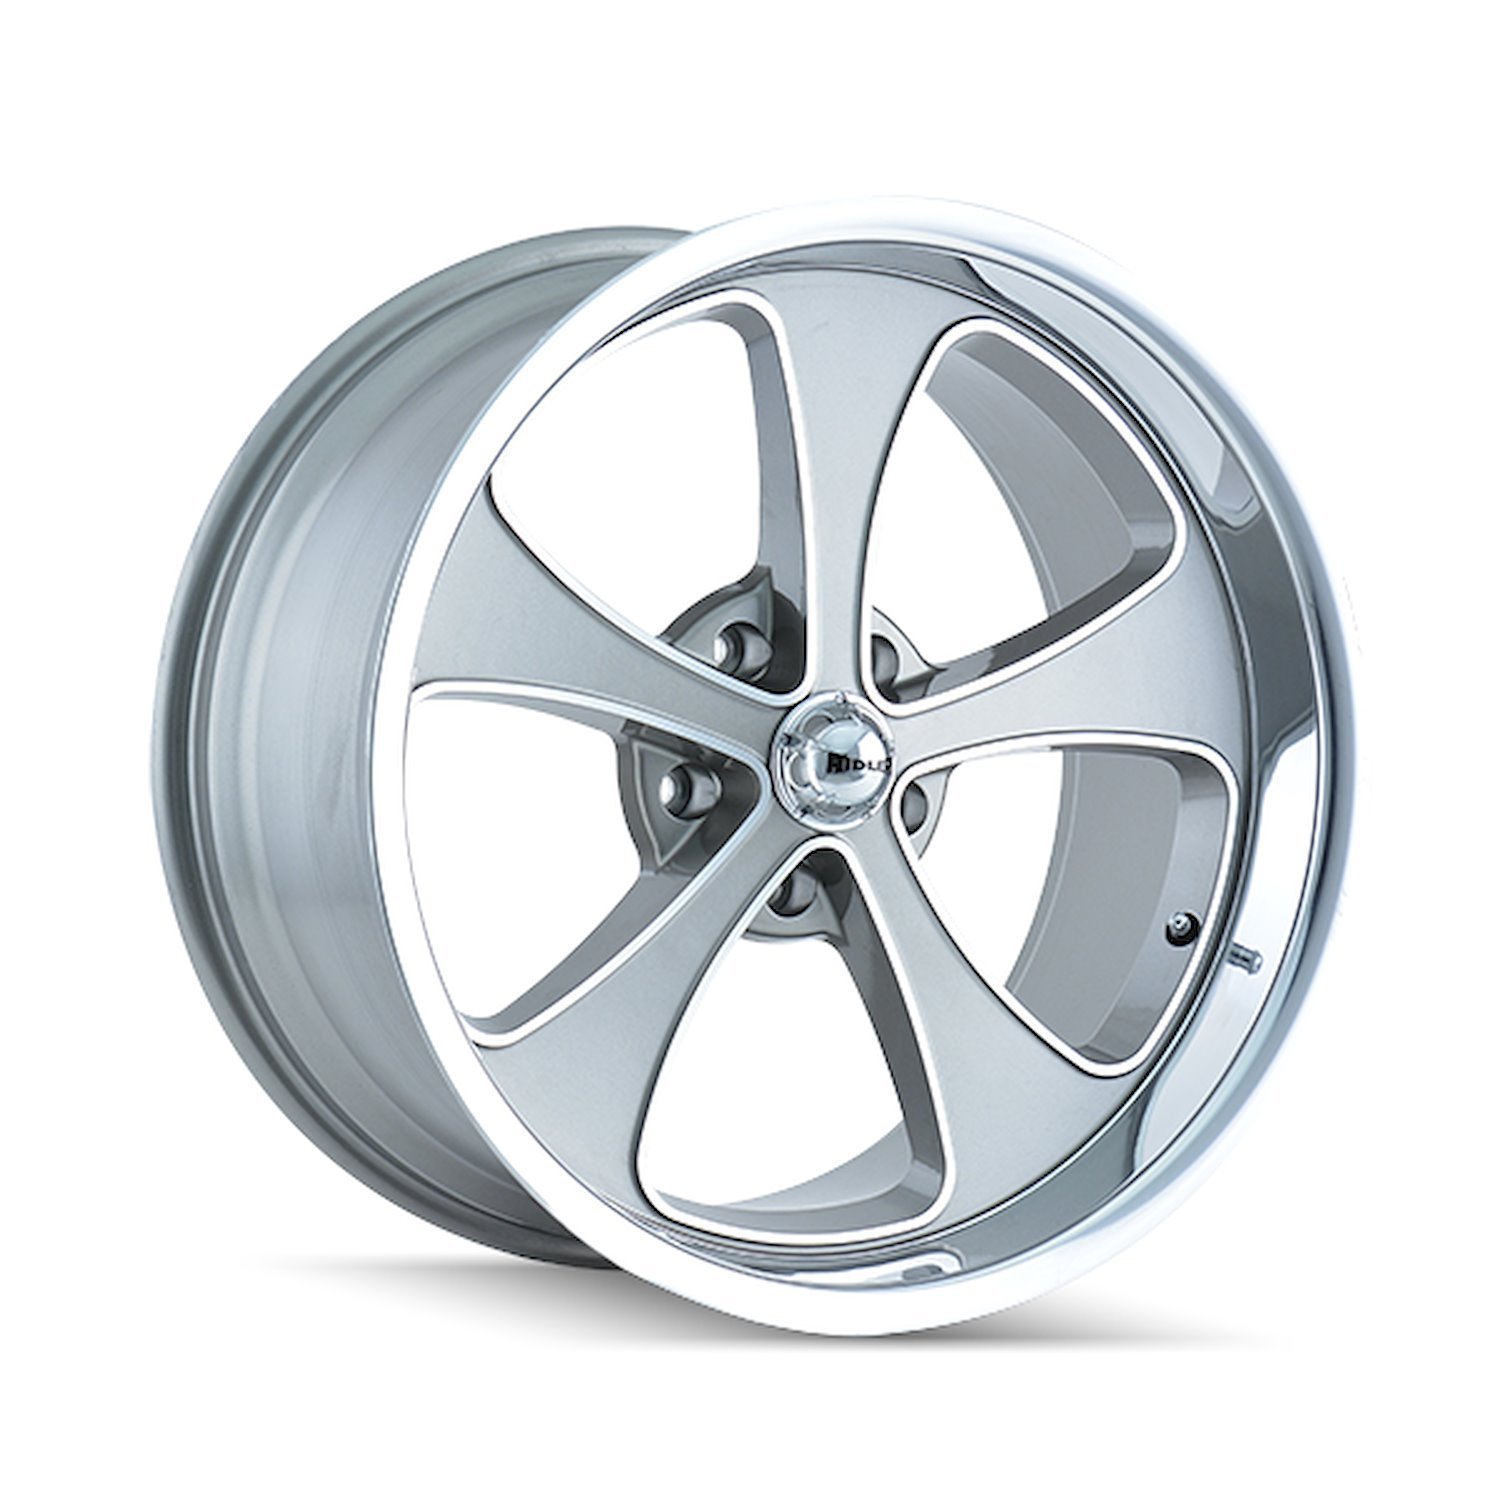 645-8985GP 645-Series Wheel [Size: 18" x 9.50"] Gloss Grey Machined/Polished Finish